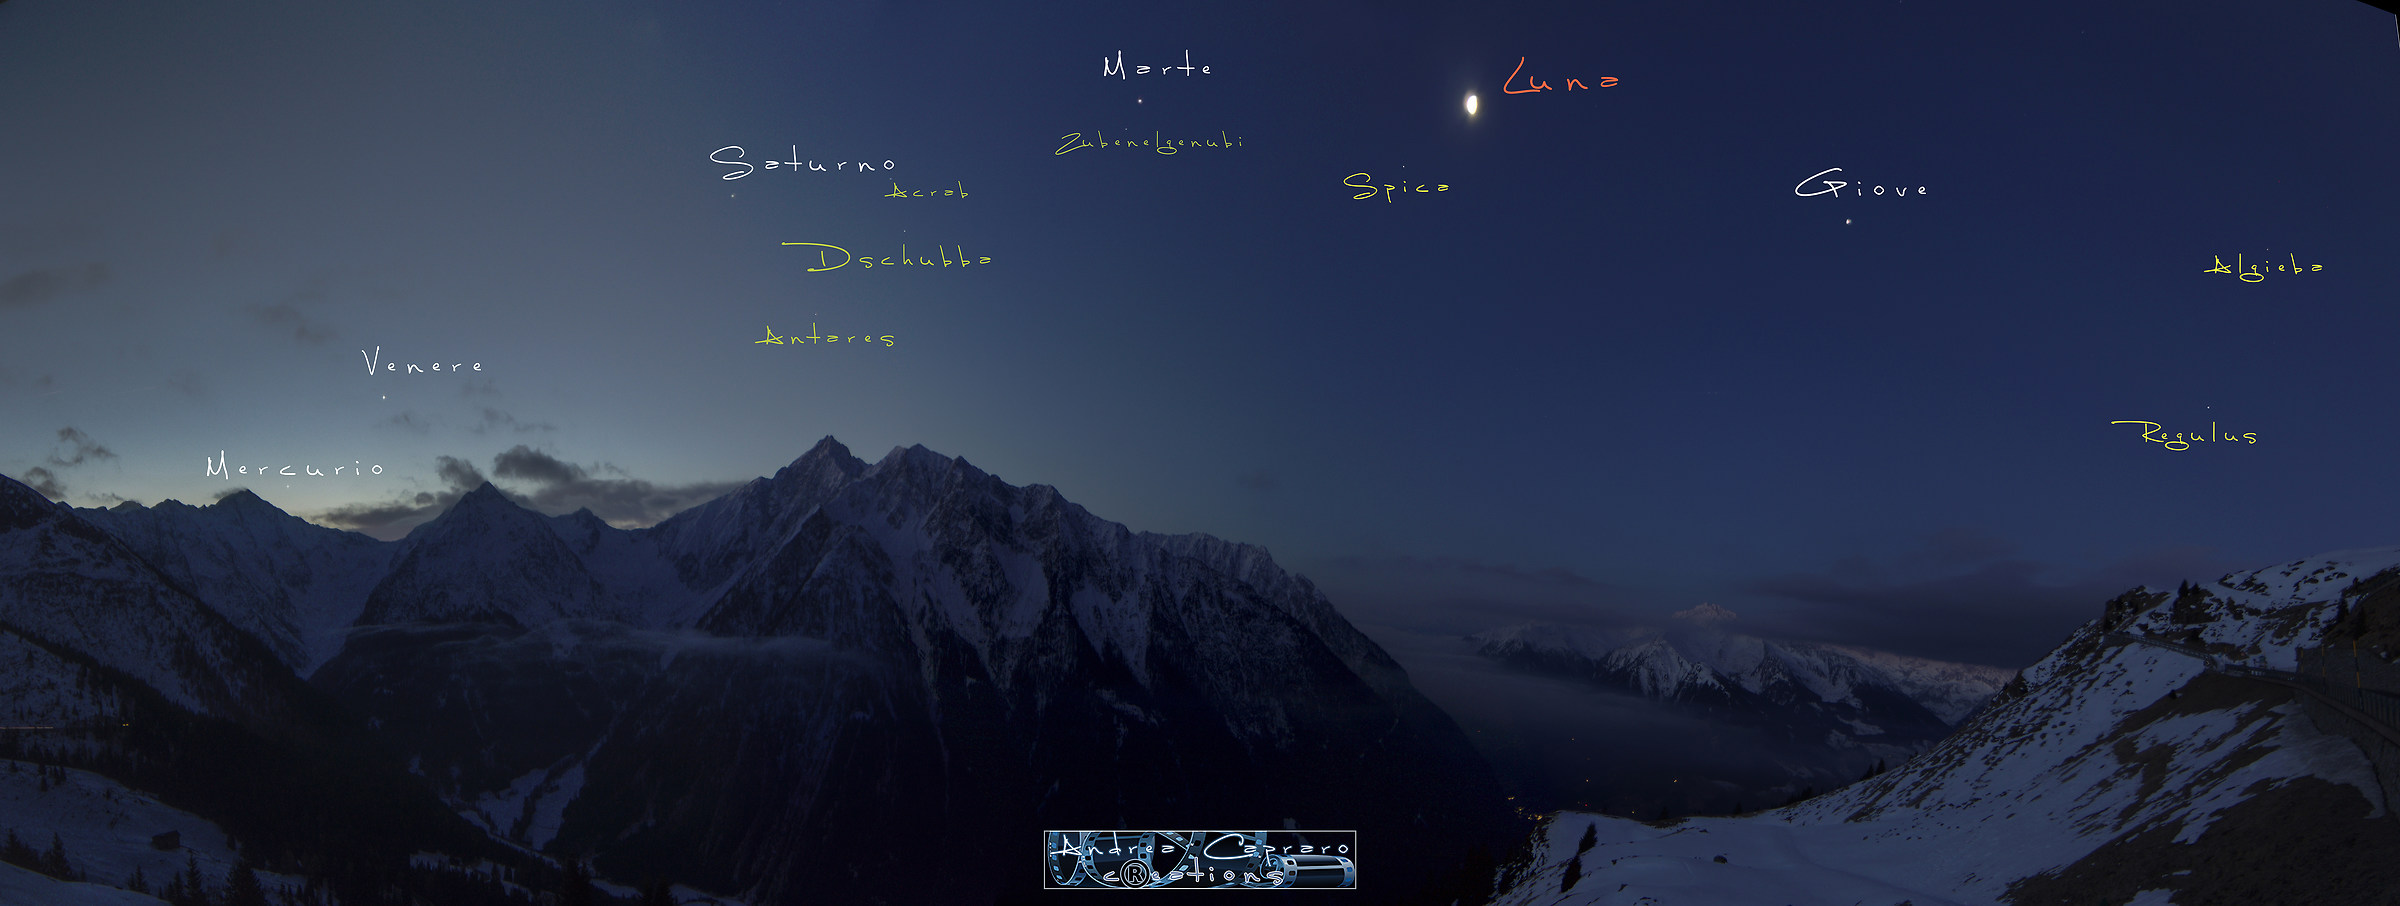 Allineamento 5 pianeti e Luna (+nomenclatura stelle)....